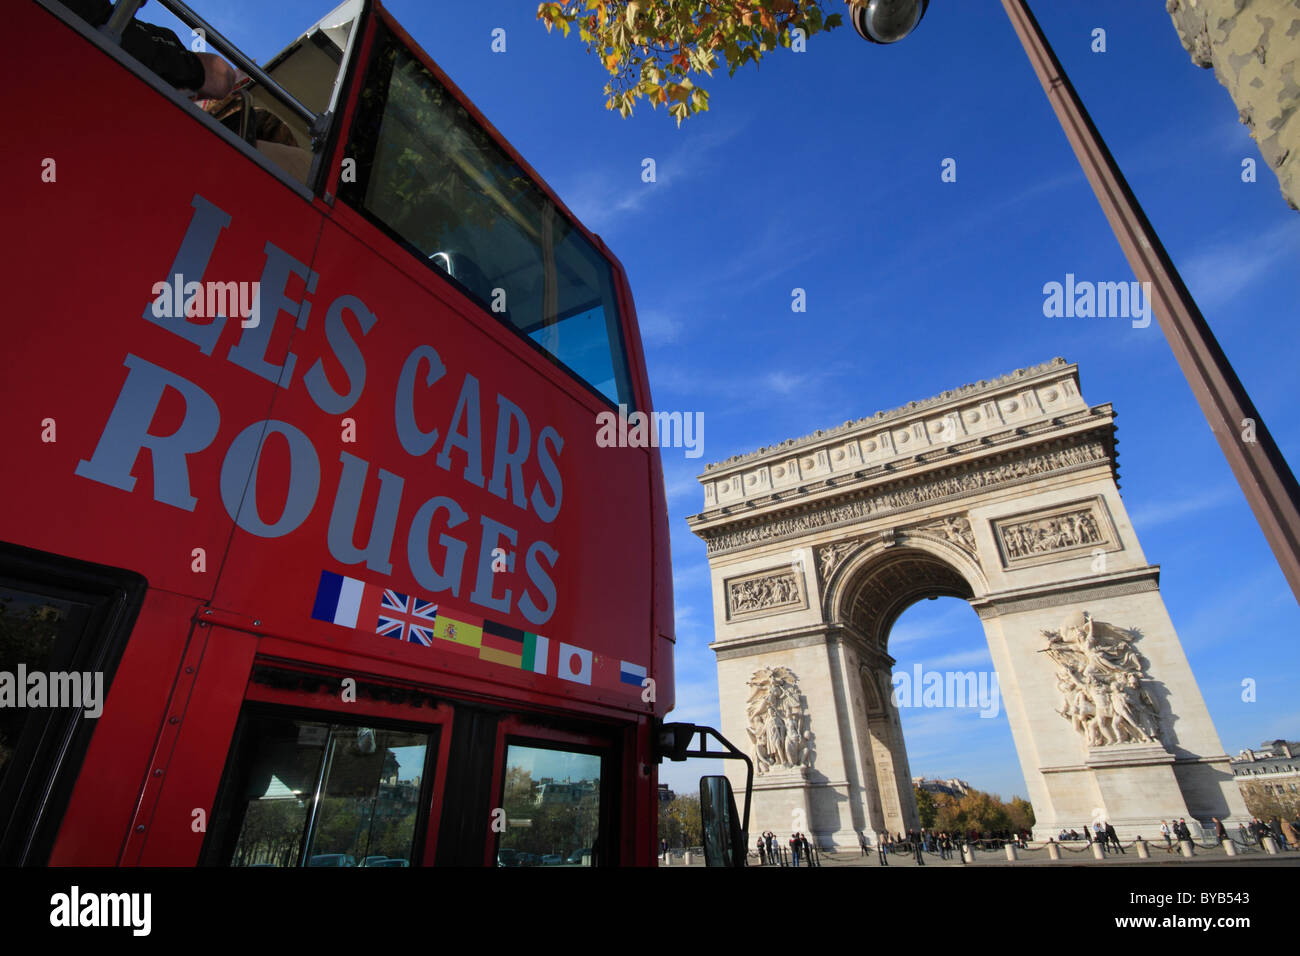 Double-decker tour bus approaching the Arc de Triomphe, Triumphal Arch, Place Charles de Gaulle Etoile, Paris, France, Europe Stock Photo